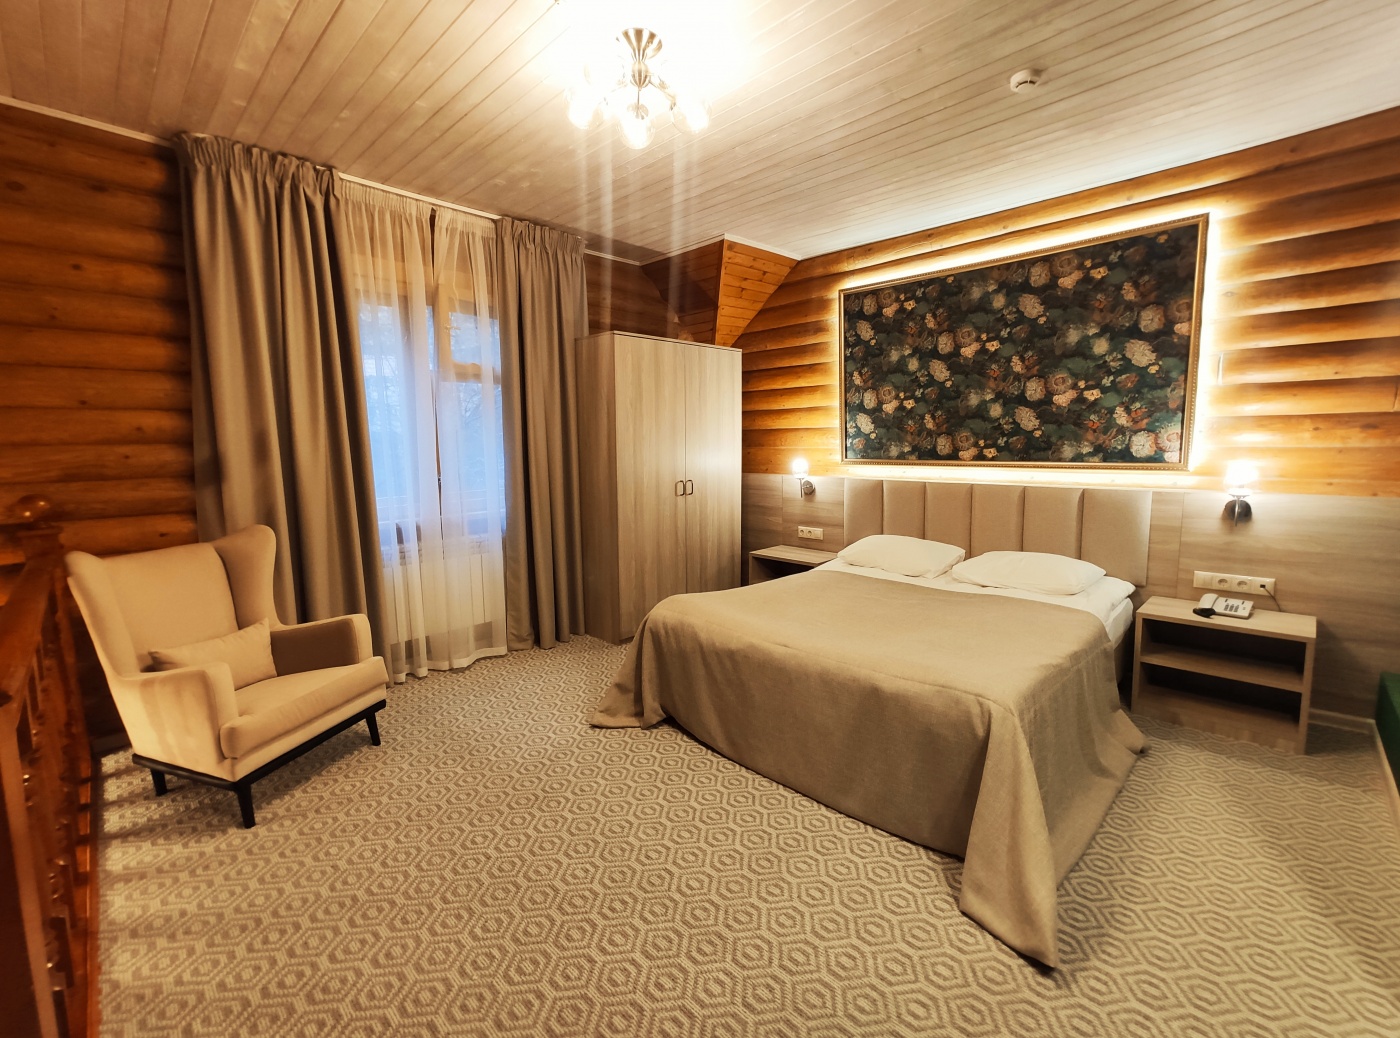  Дачный отель «Истра Holiday» Московская область Таунхаус с одной спальной комнатой, фото 1